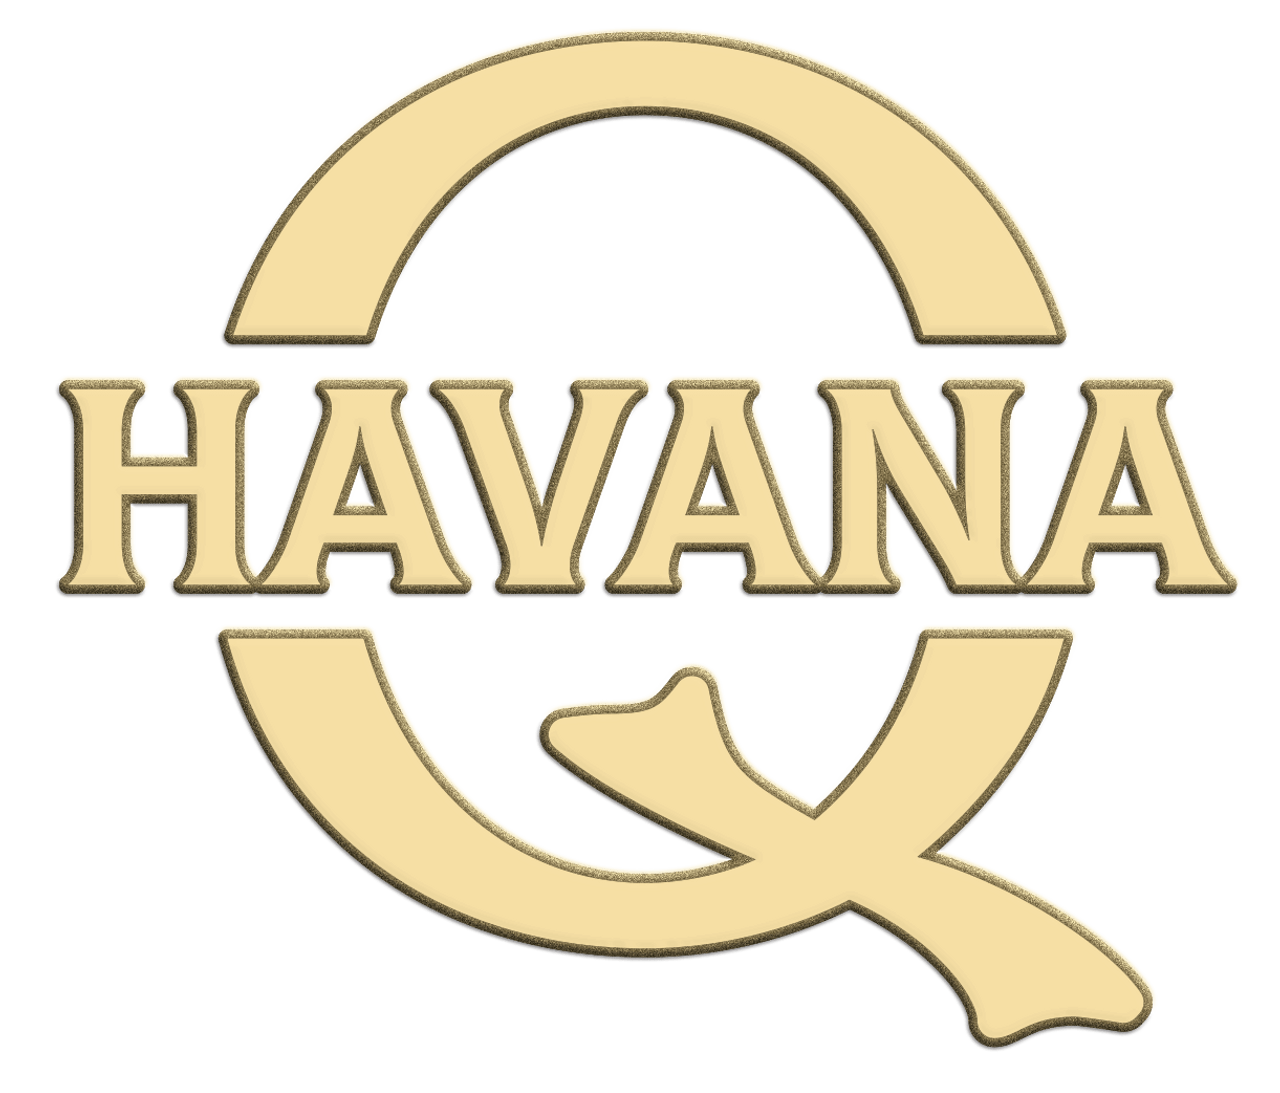 Havana Q by Quorum Double Robusto